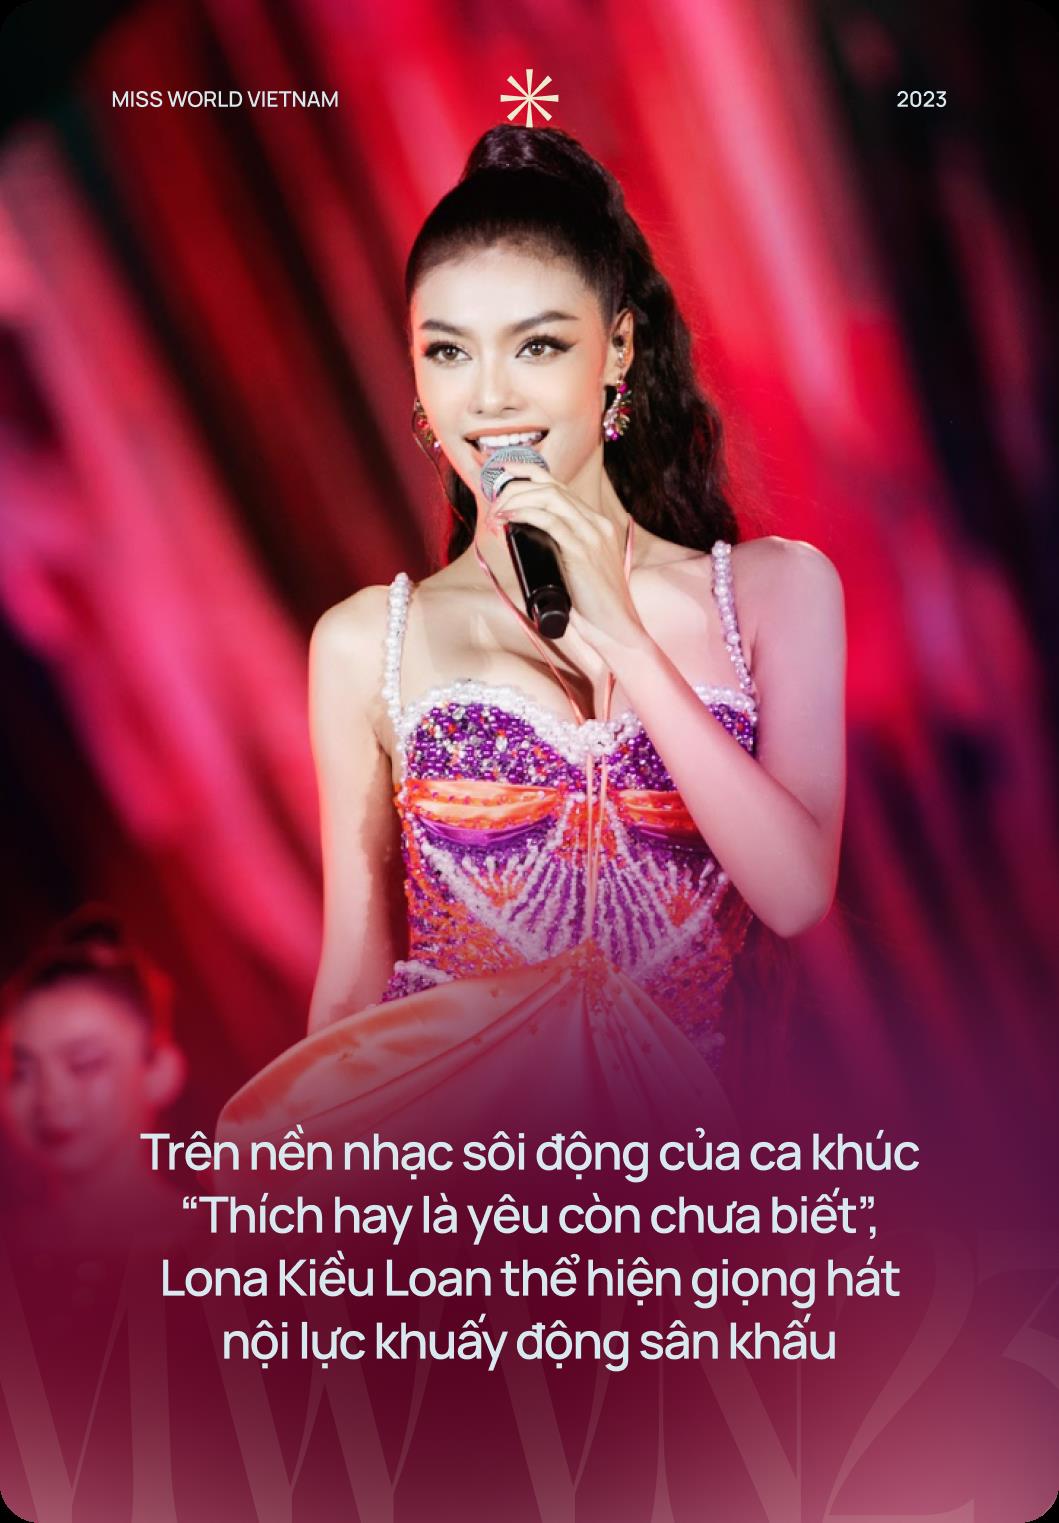 Mãn nhãn với Chung kết Miss World Vietnam 2023: Lona khuấy động với bản hit đình đám, Đông Nhi đem tới ca khúc đầy cảm xúc - Ảnh 7.